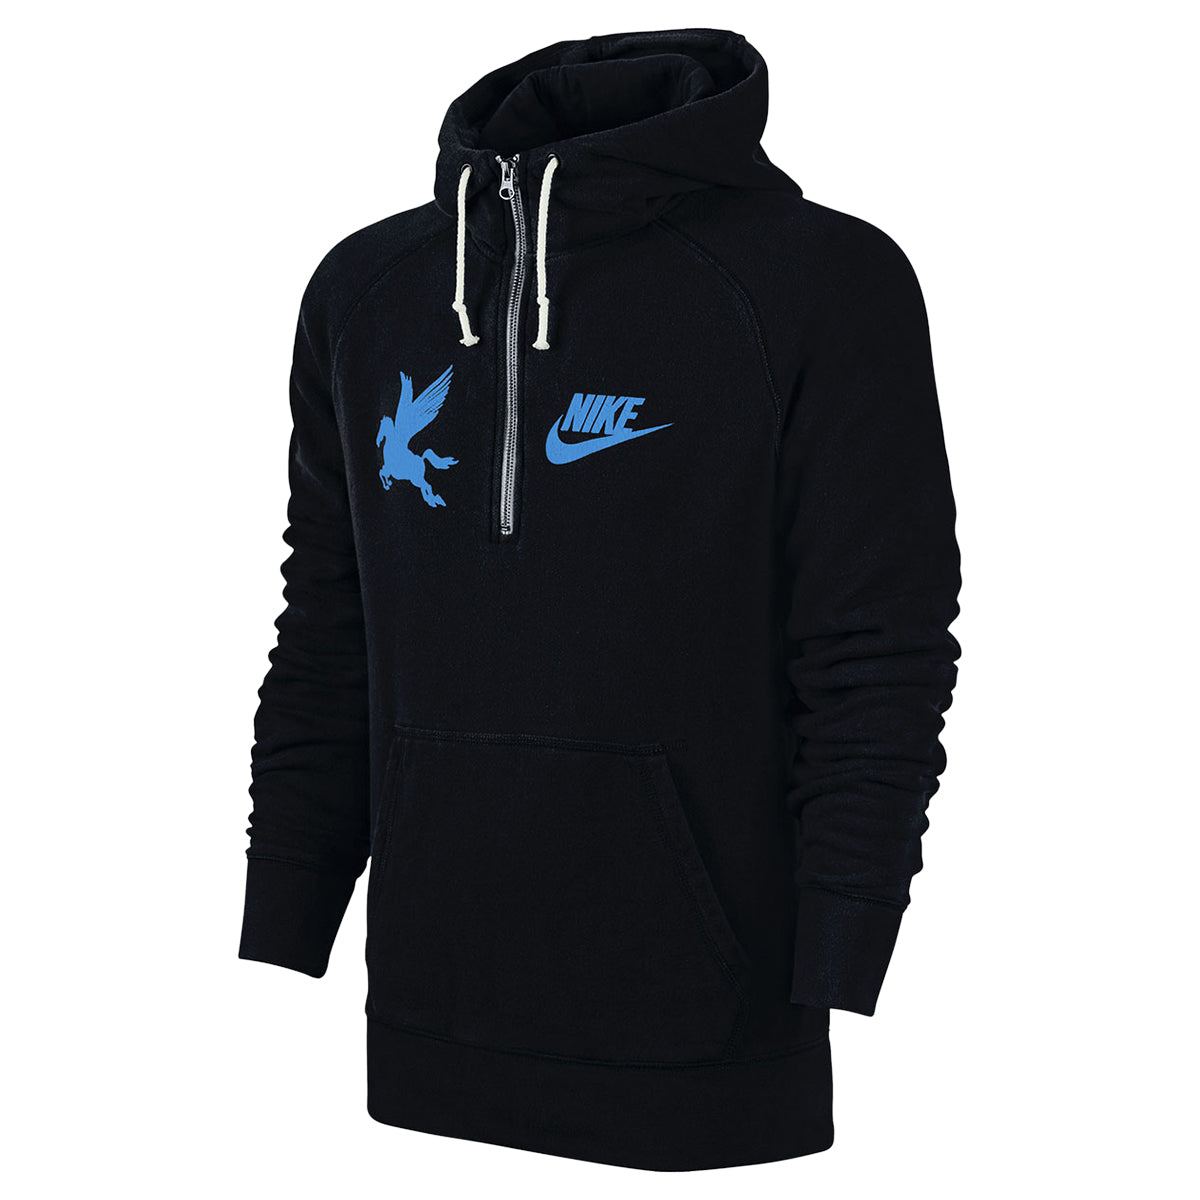 Nike Sportswear Fleece Hoodie Mens Style : 546344